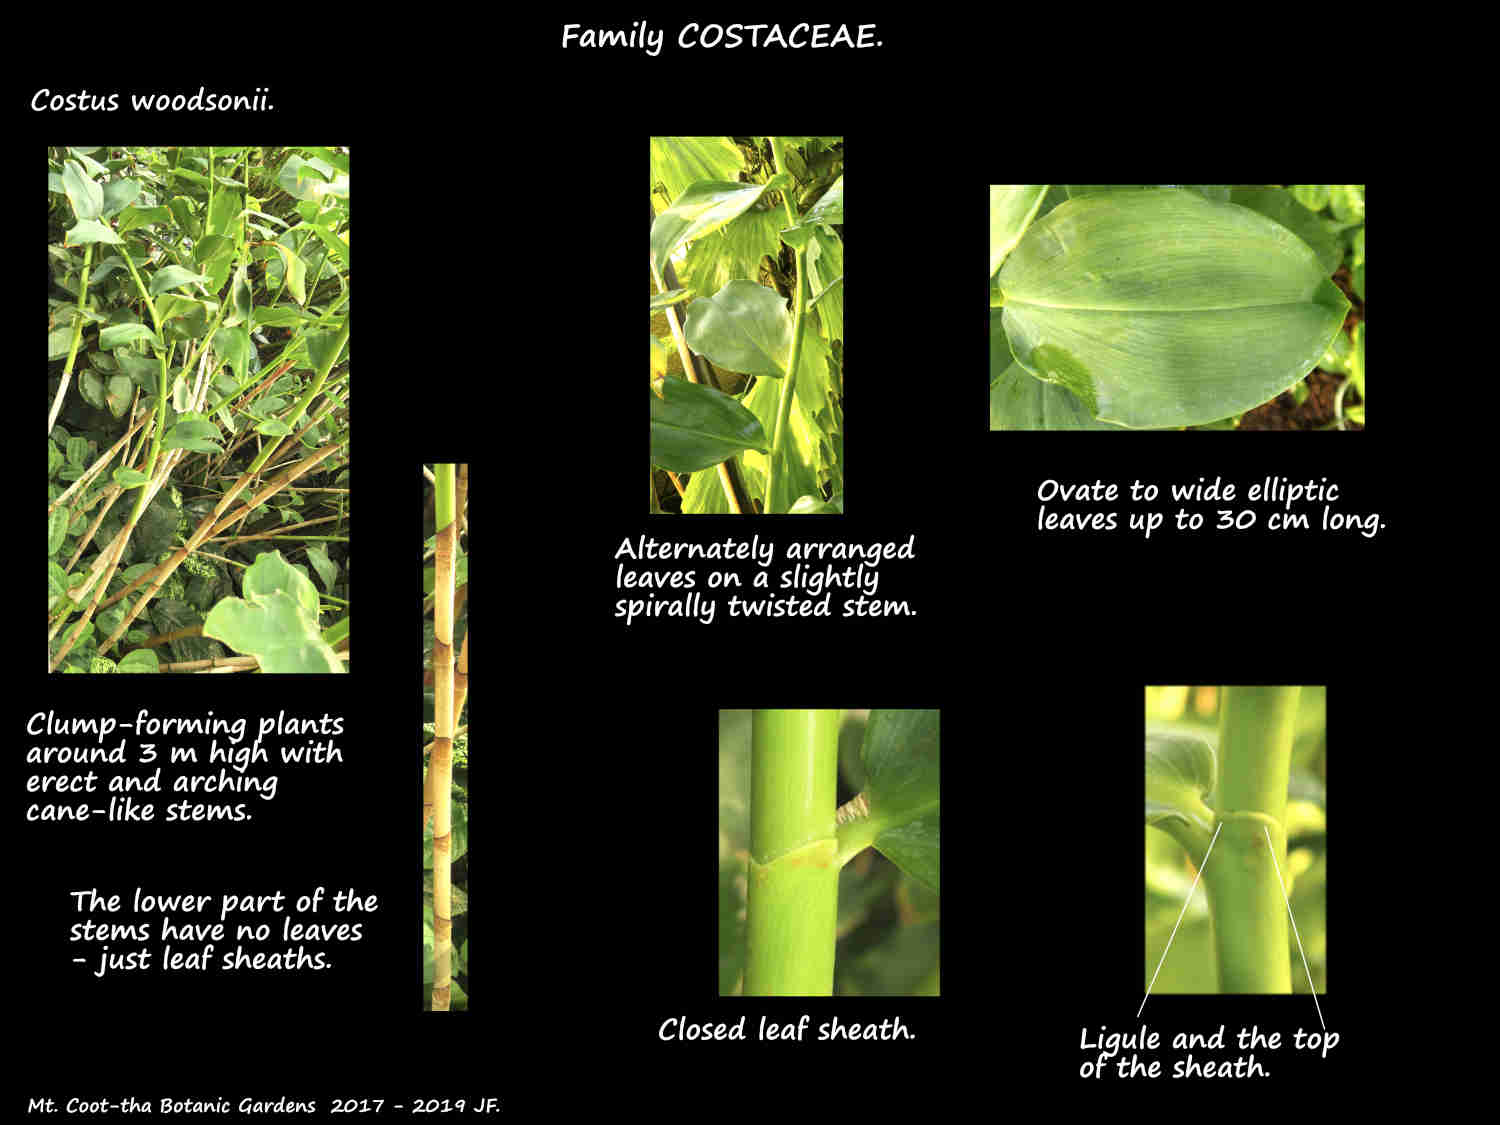 1 Costus woodsonii plants & leaves